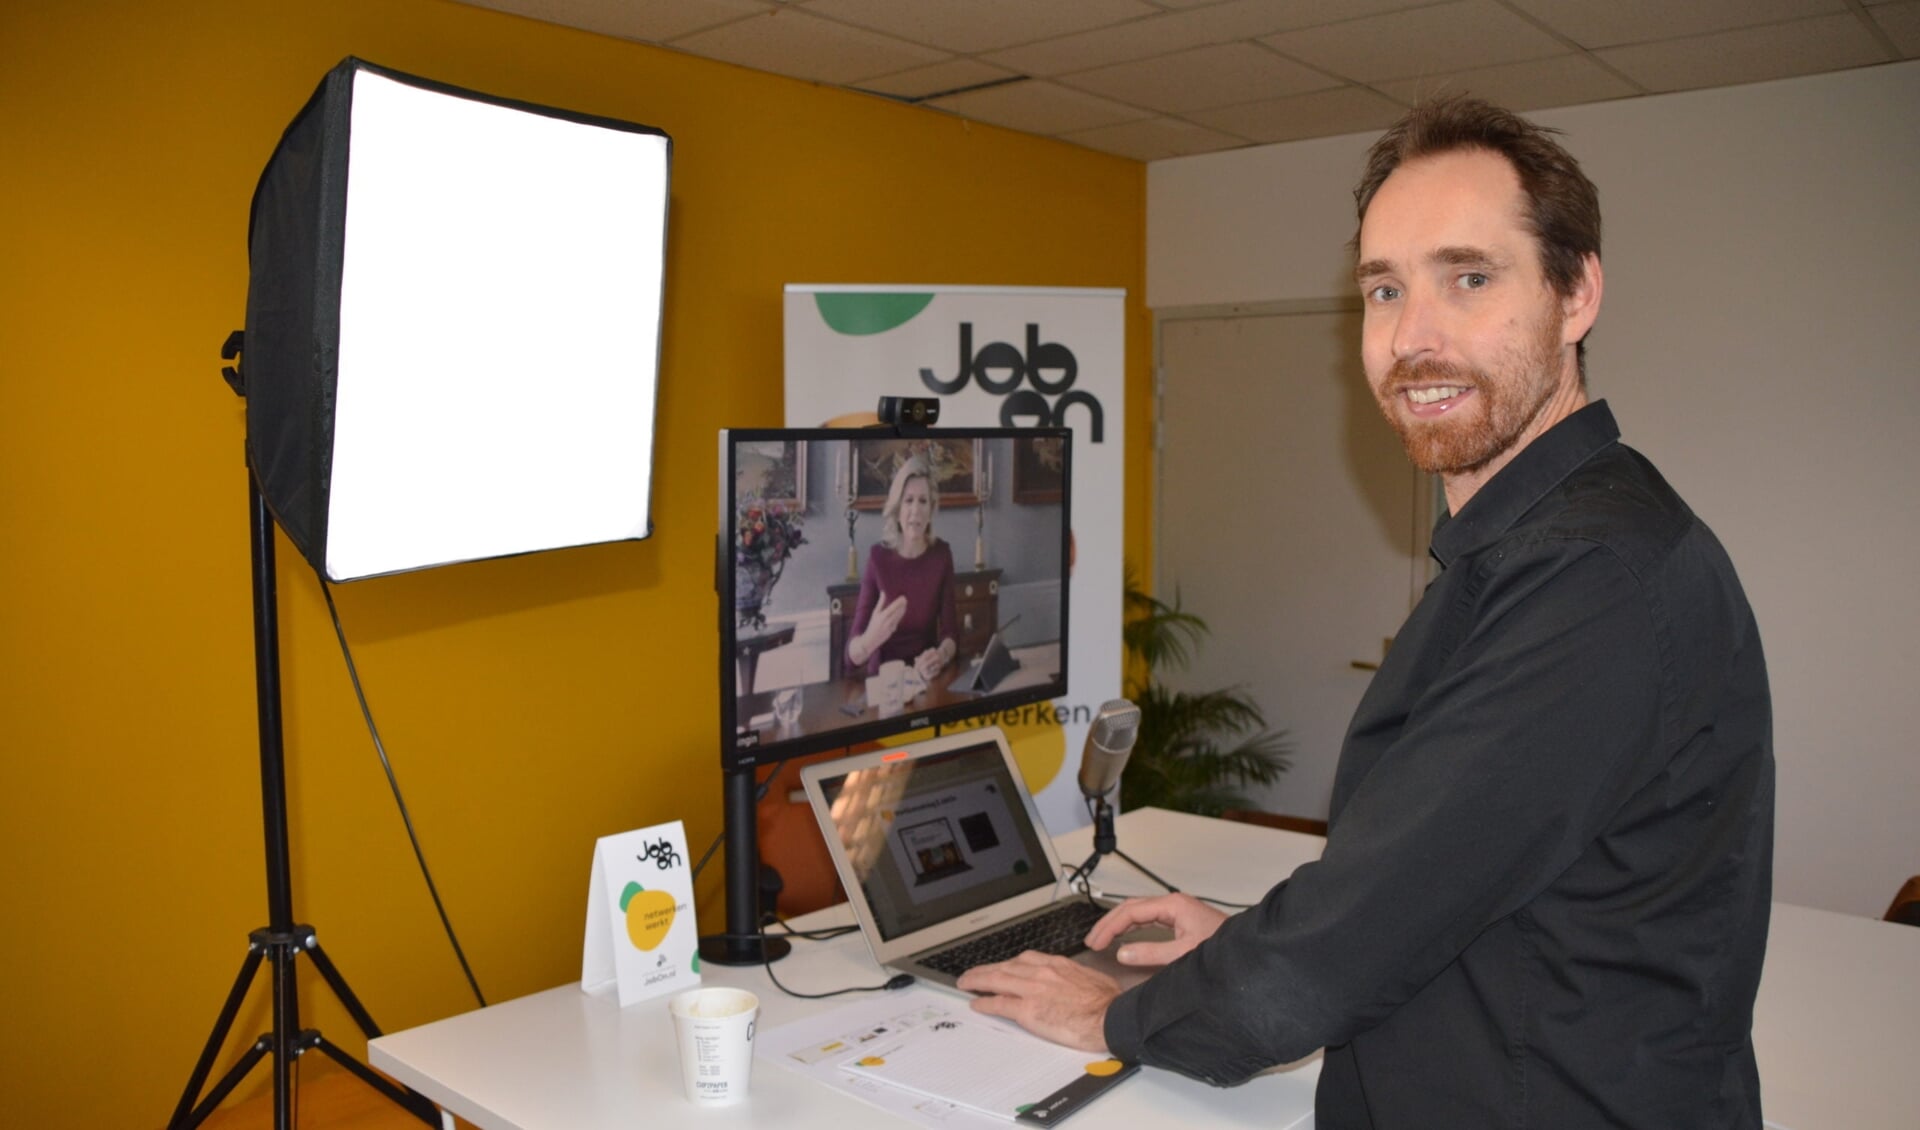 Pieter Vermeer is de oprichter van JobOn. Een netwerker pur sang, vindt Lea Luijten, die werknemers en werkgevers met elkaar in contact brengt.